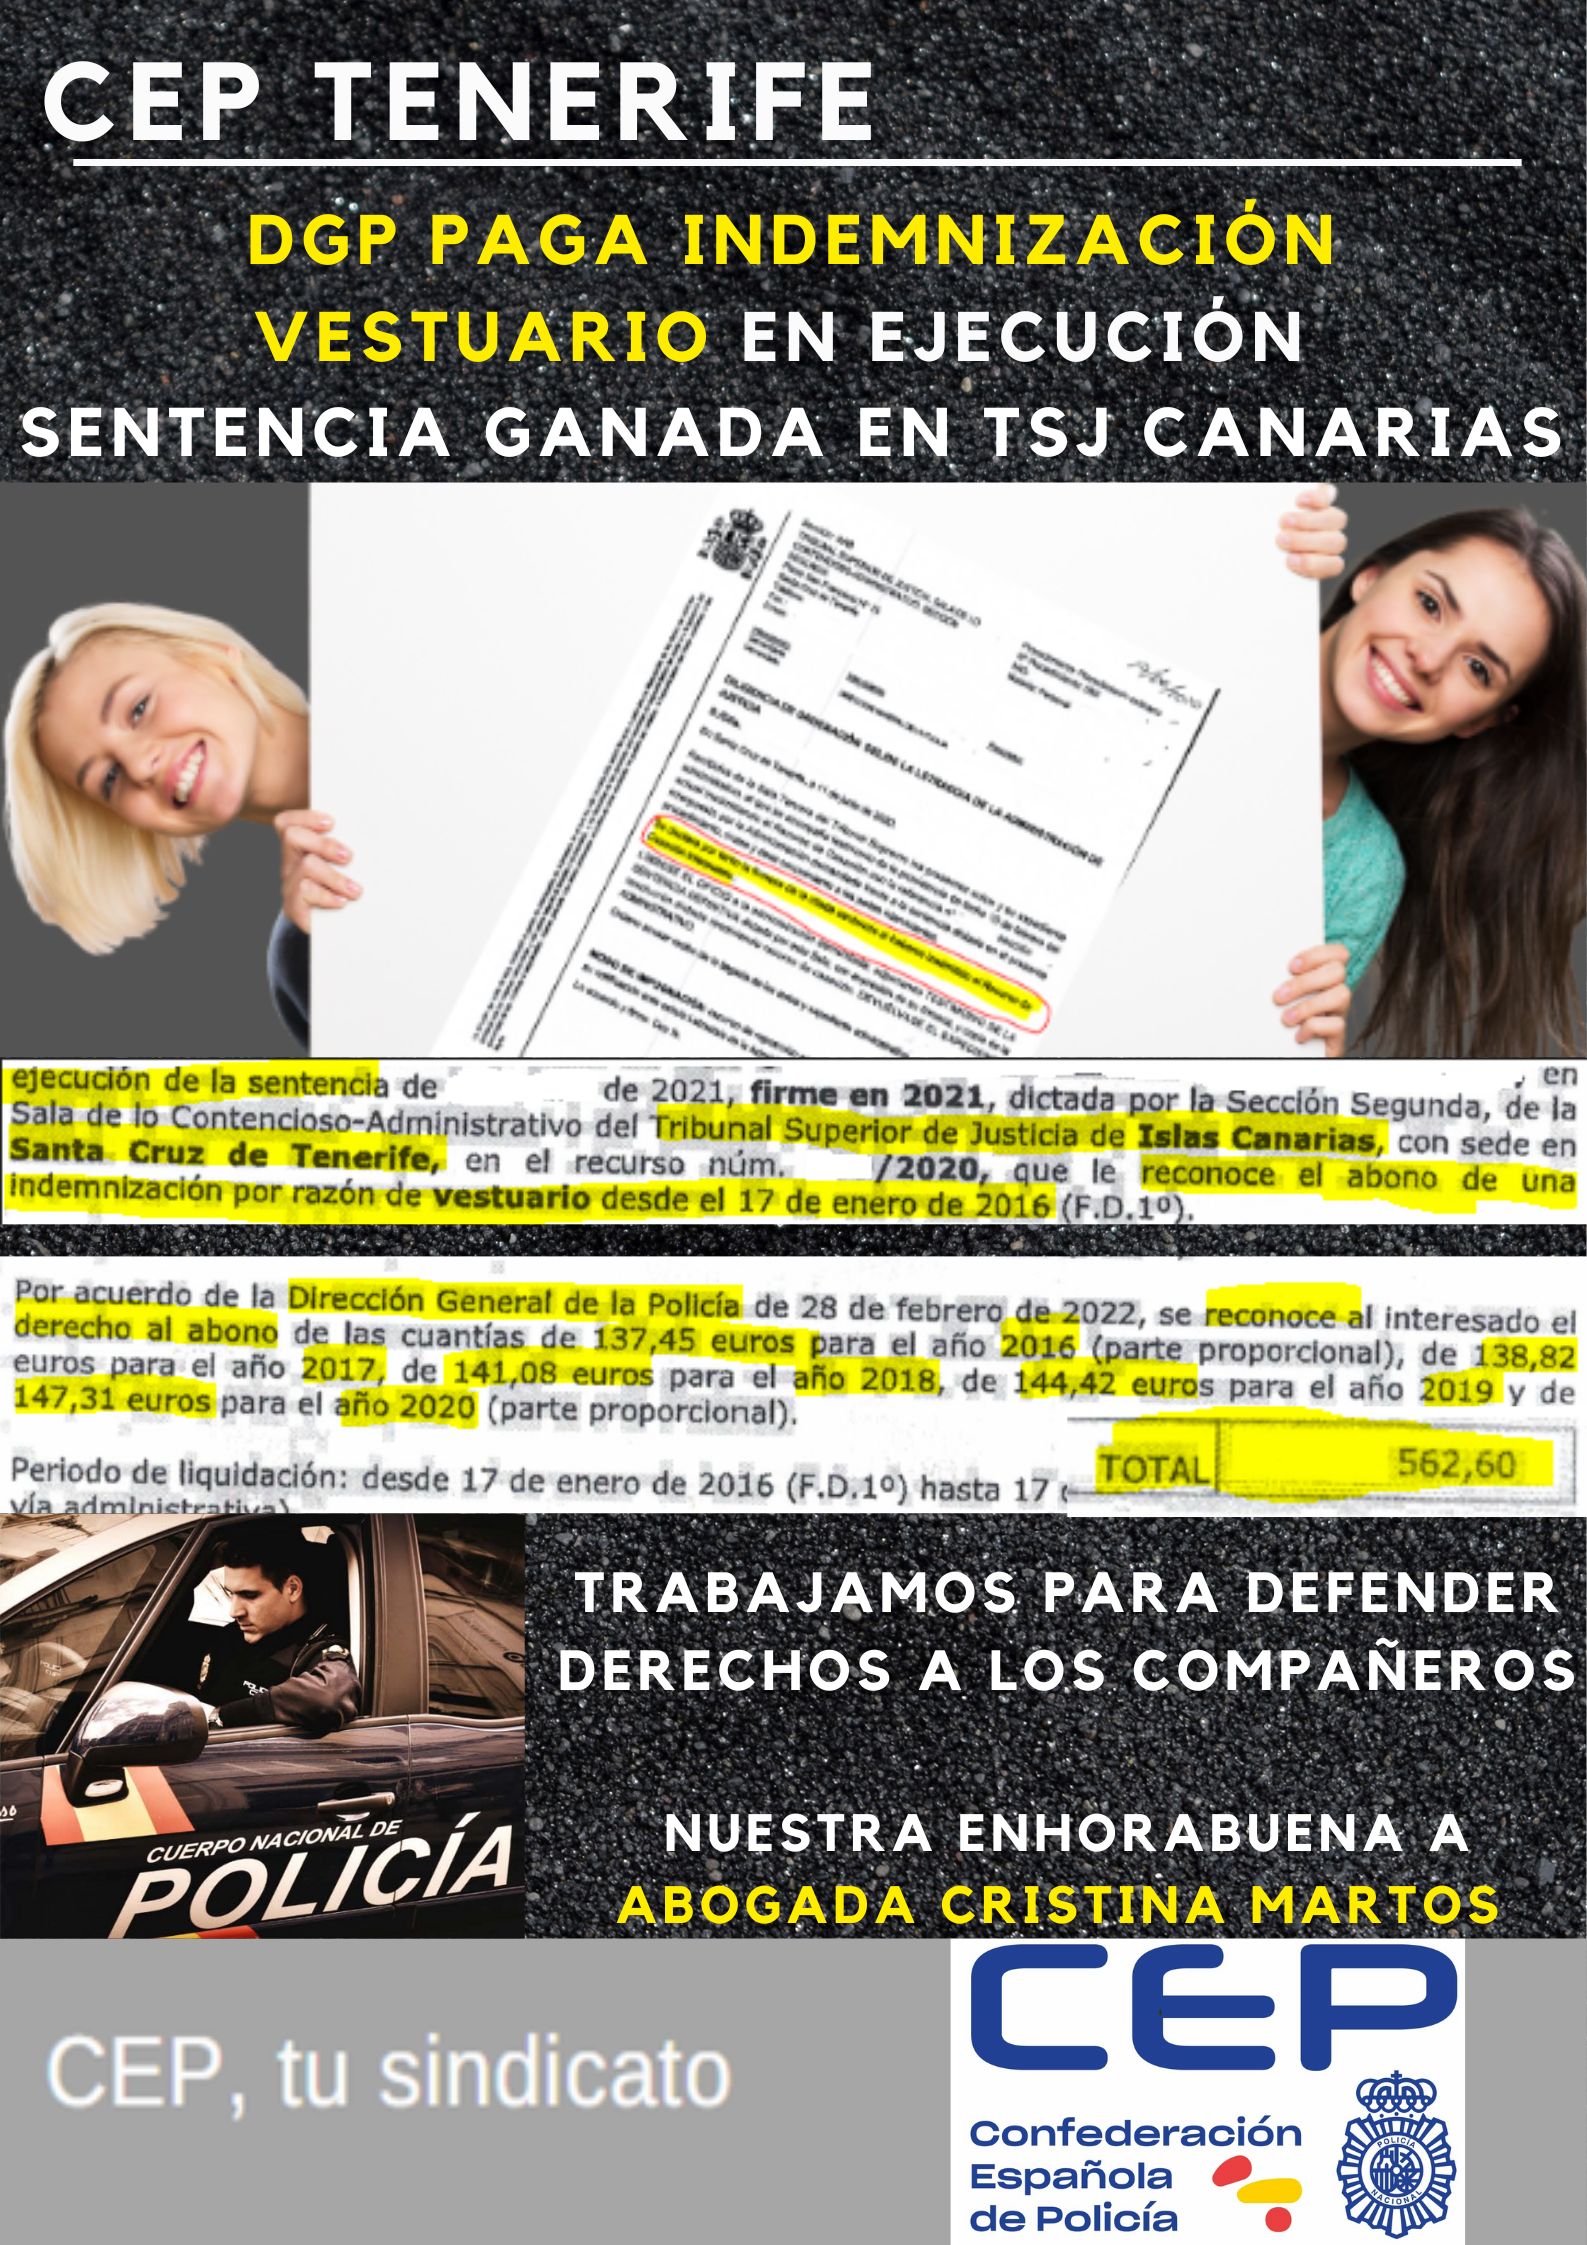 DGP paga indemnización vestuario de paisano en ejecución sentencia ganada en TSJ Canarias